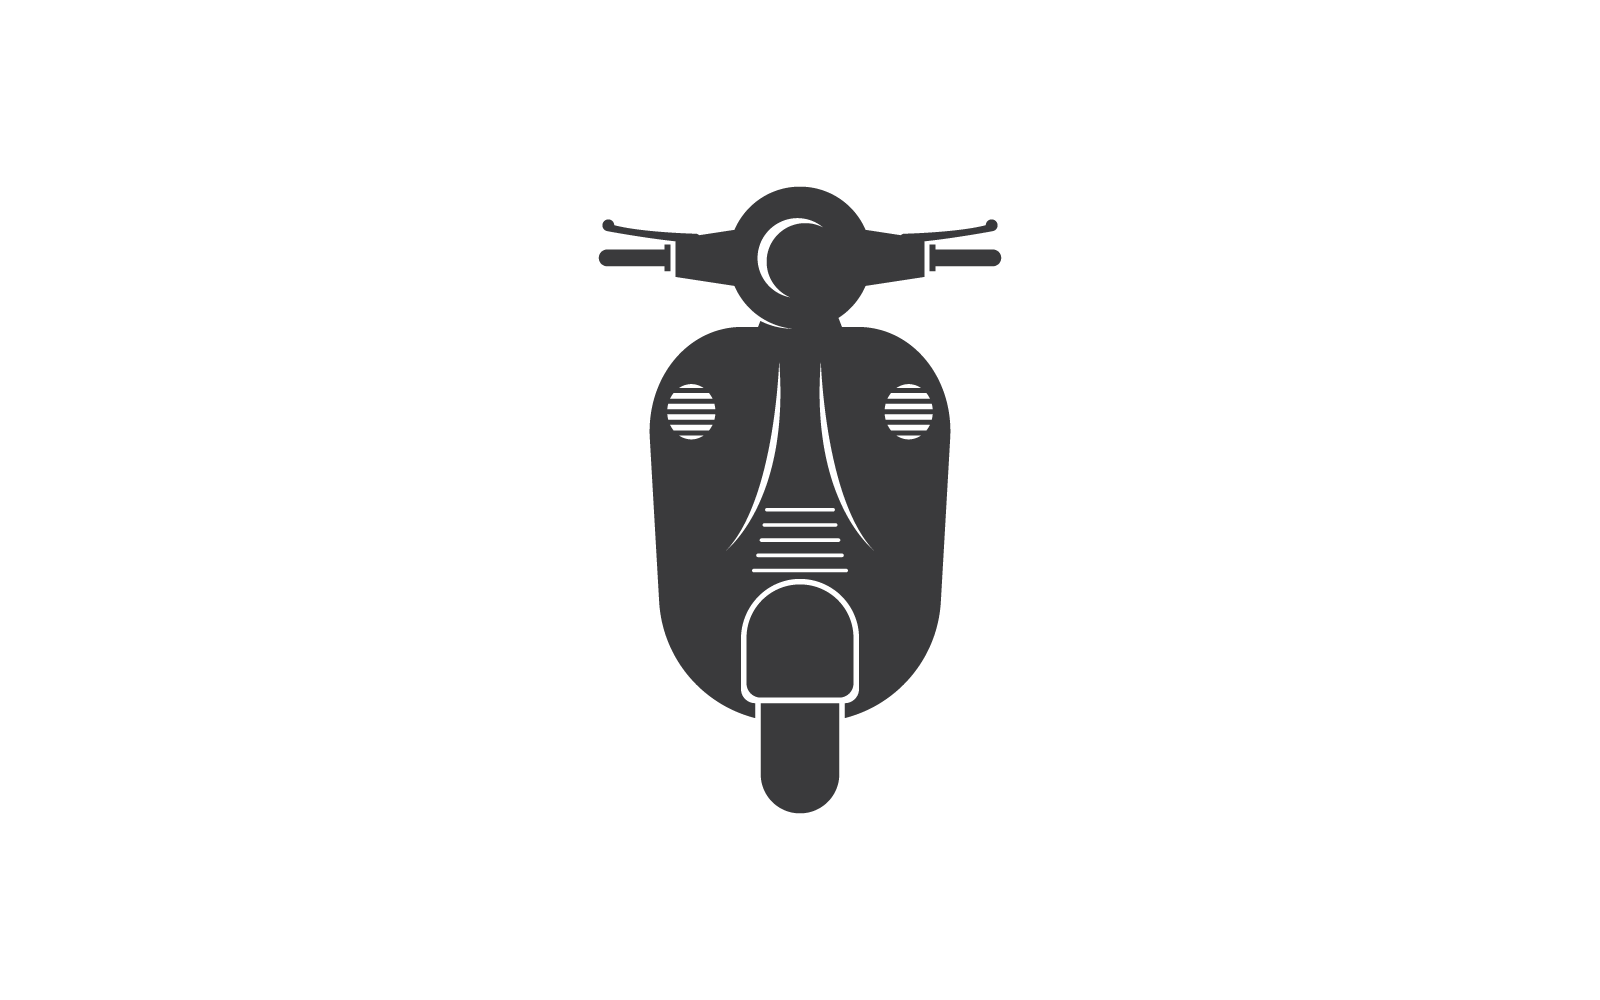 Diseño plano vectorial del logotipo de scooter, pasos 10